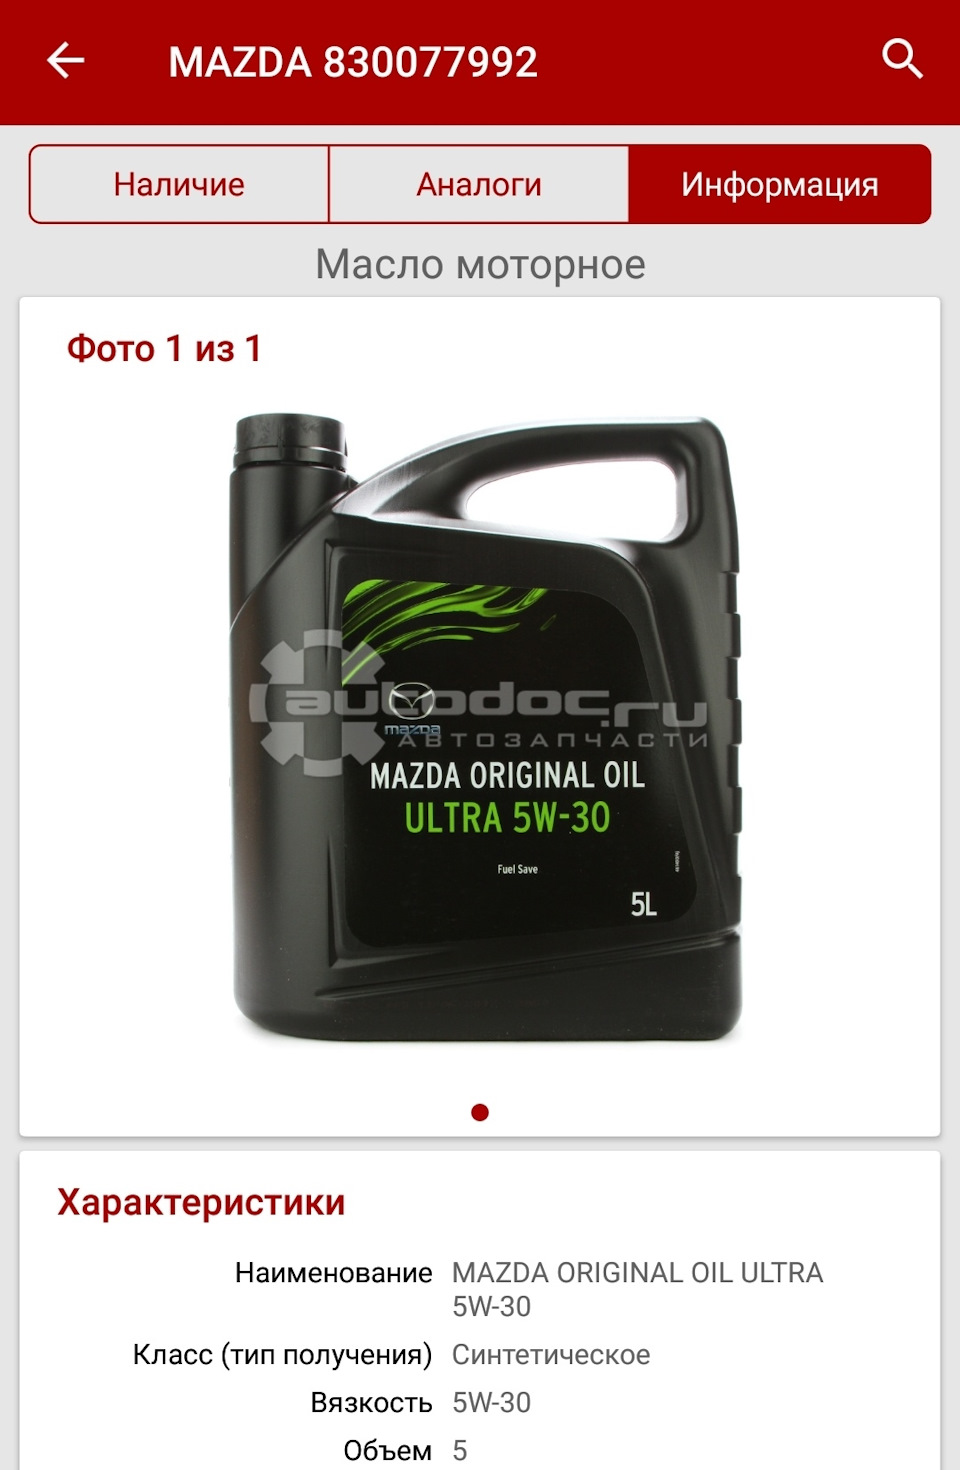 Масло 830077992. Mazda 830077992. Масло Мазда аналог. Моторное масло Mazda Original Oil Ultra 5w-30 5 л отзывы.